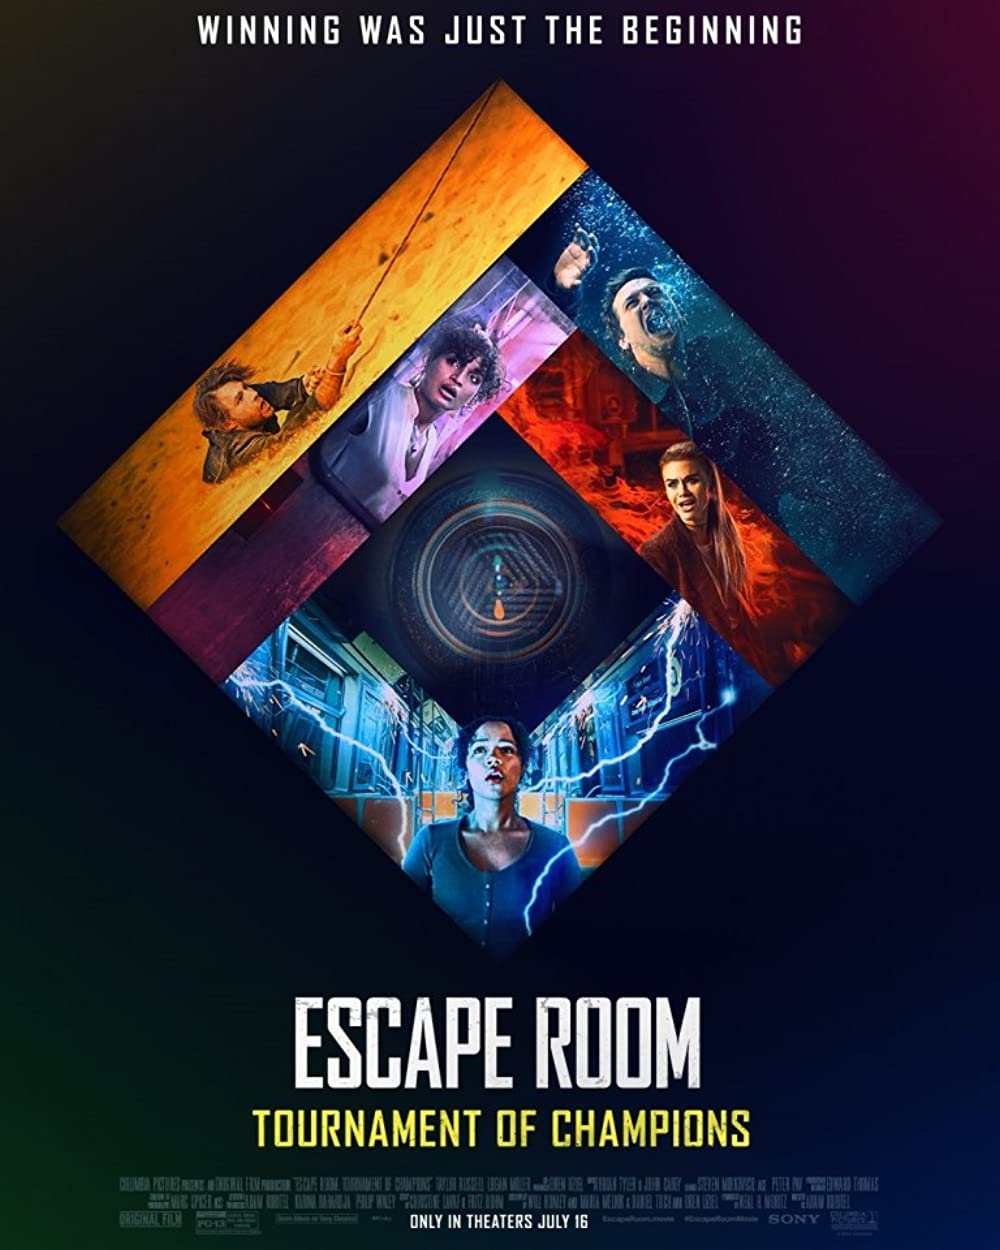 Escape Room Tournament of Champions## Escape Room: Tournament of Champions